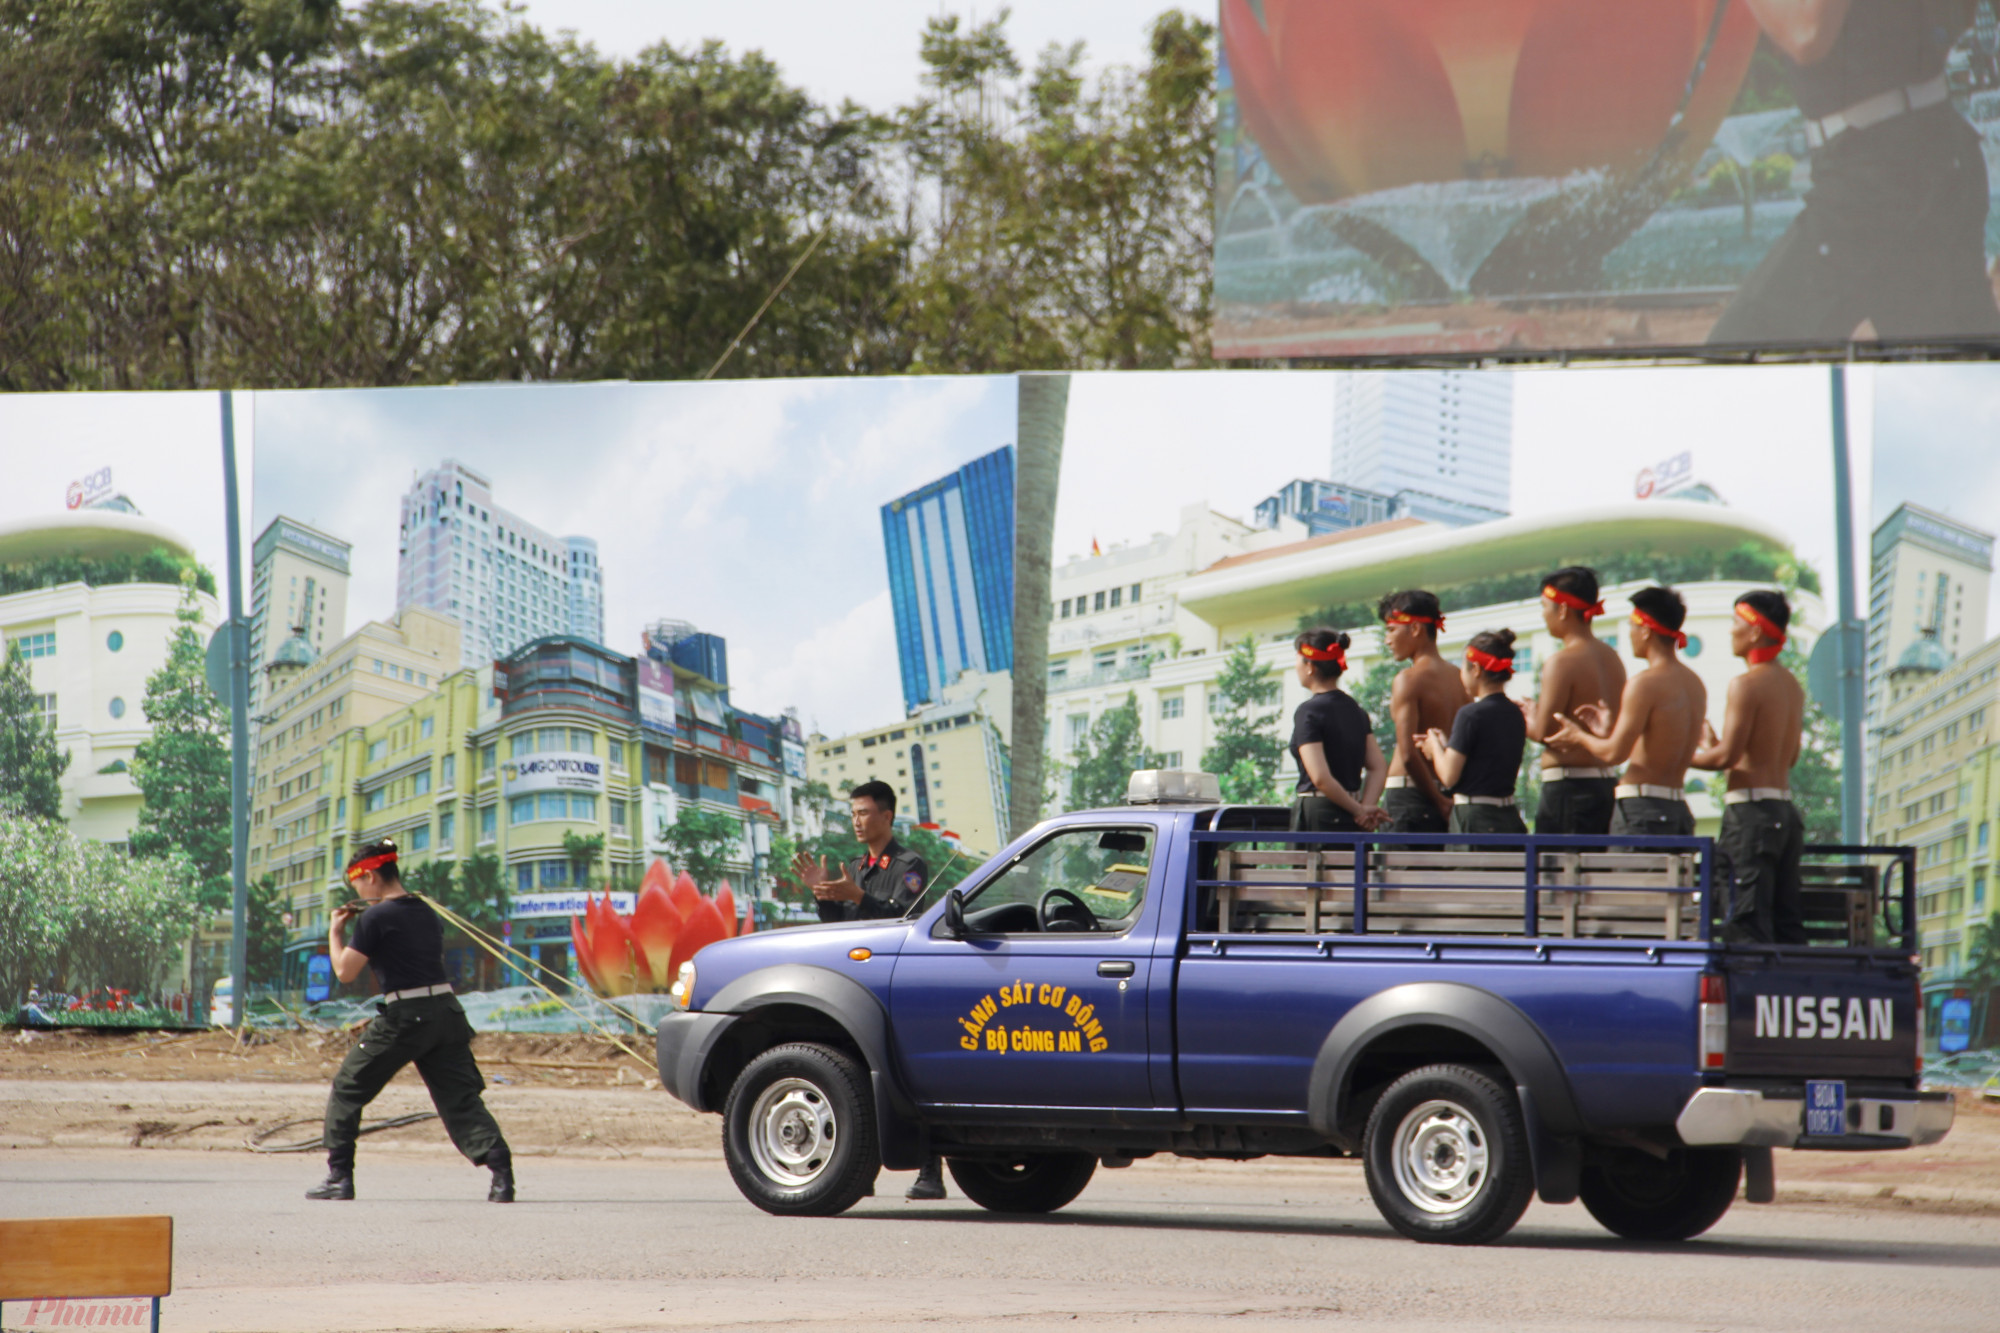 Hình ảnh nữ Cảnh sát cơ động dùng sức kéo chạy chiếc xe chở nhiều người gây ấn tượng mạnh cho các đại biểu tham dự.